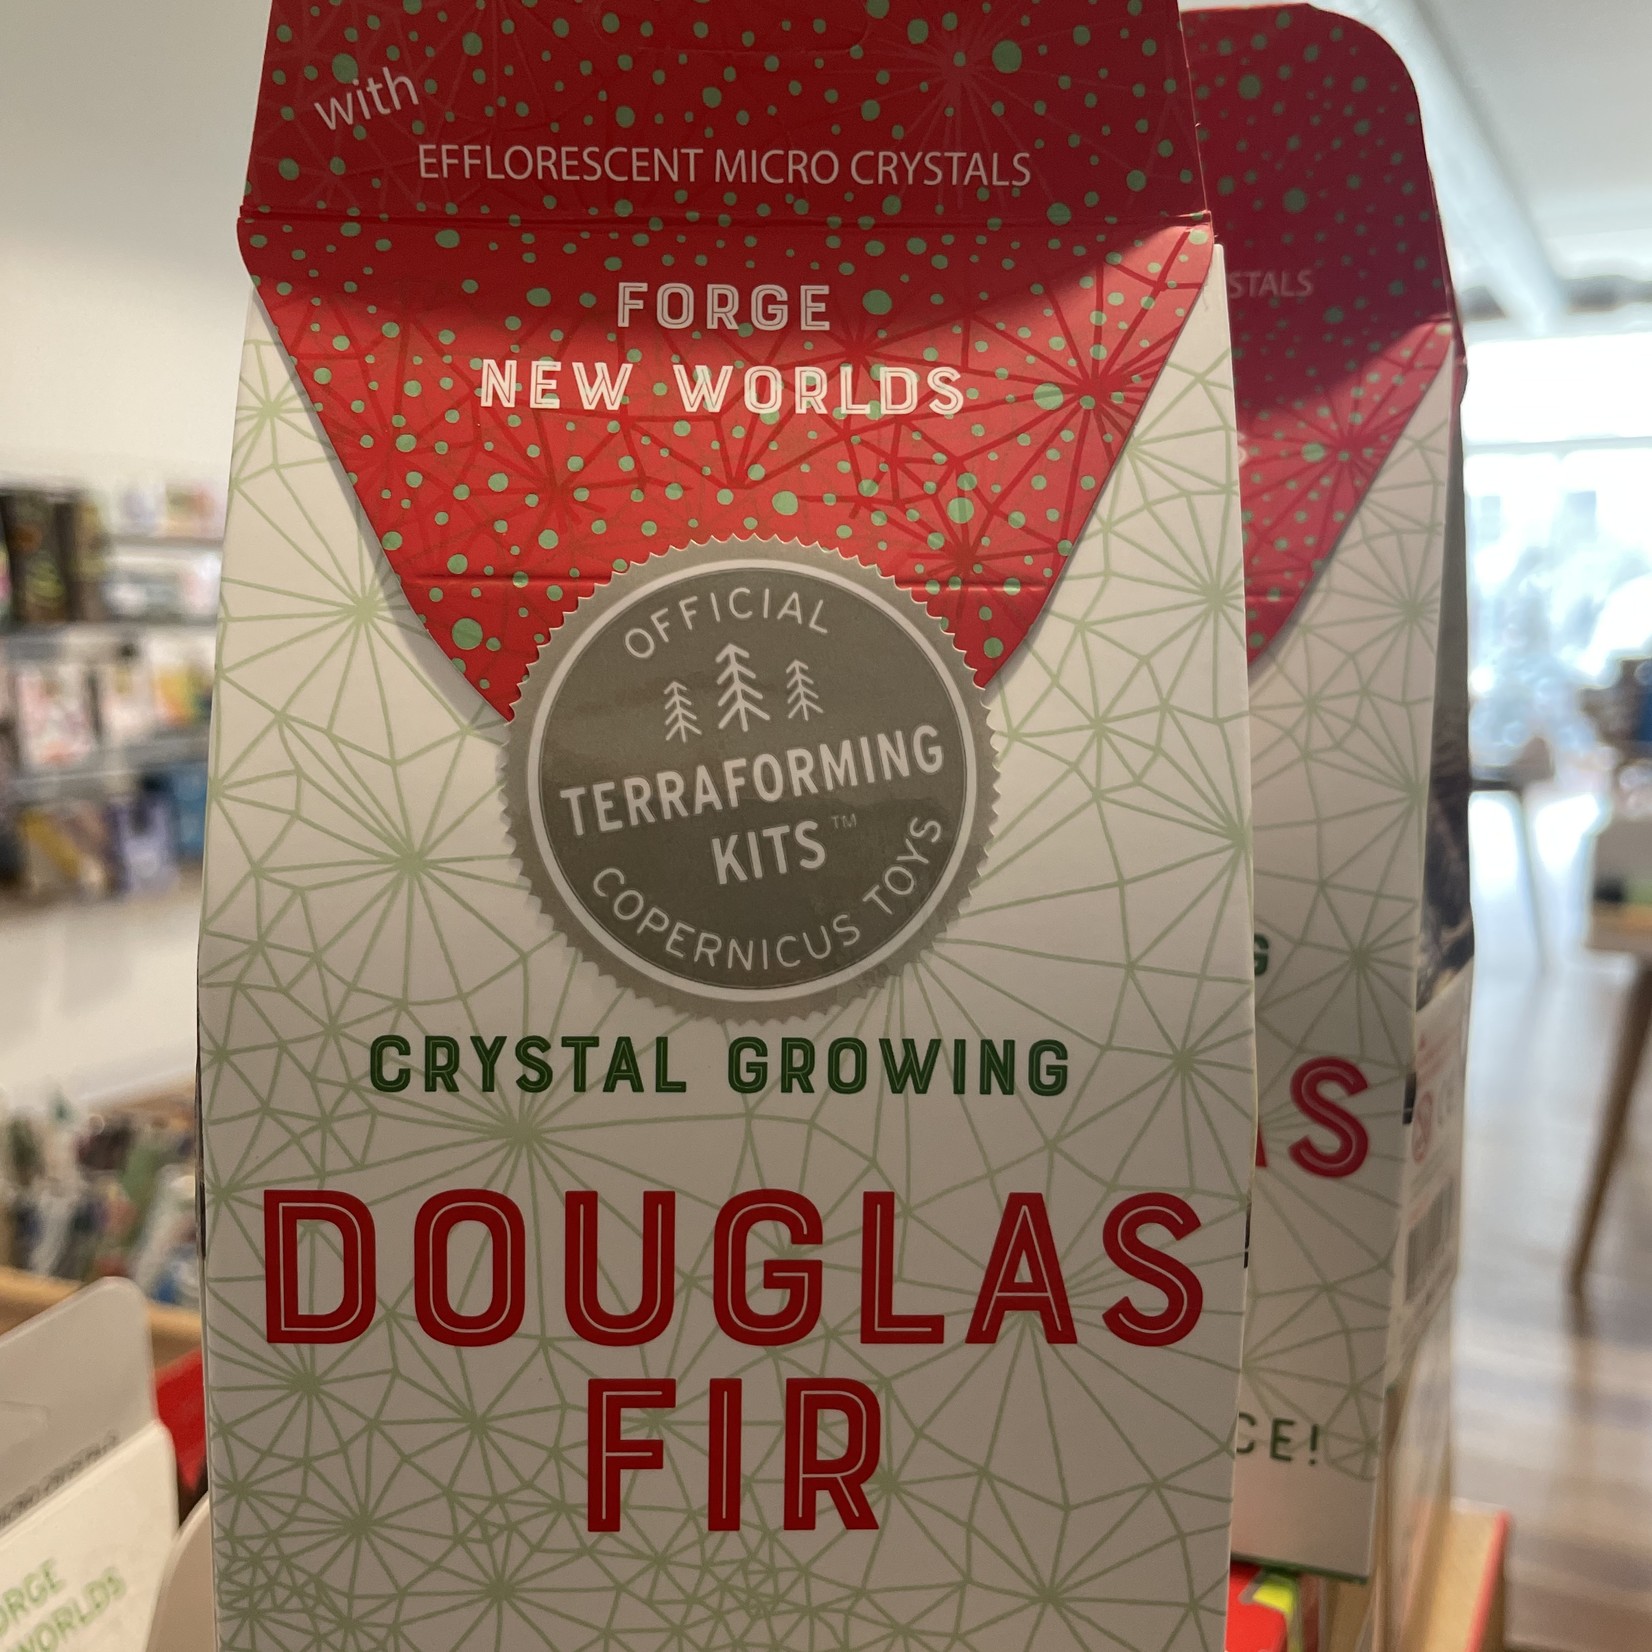 Copernicus Toys Crystal Growing Douglas Fir